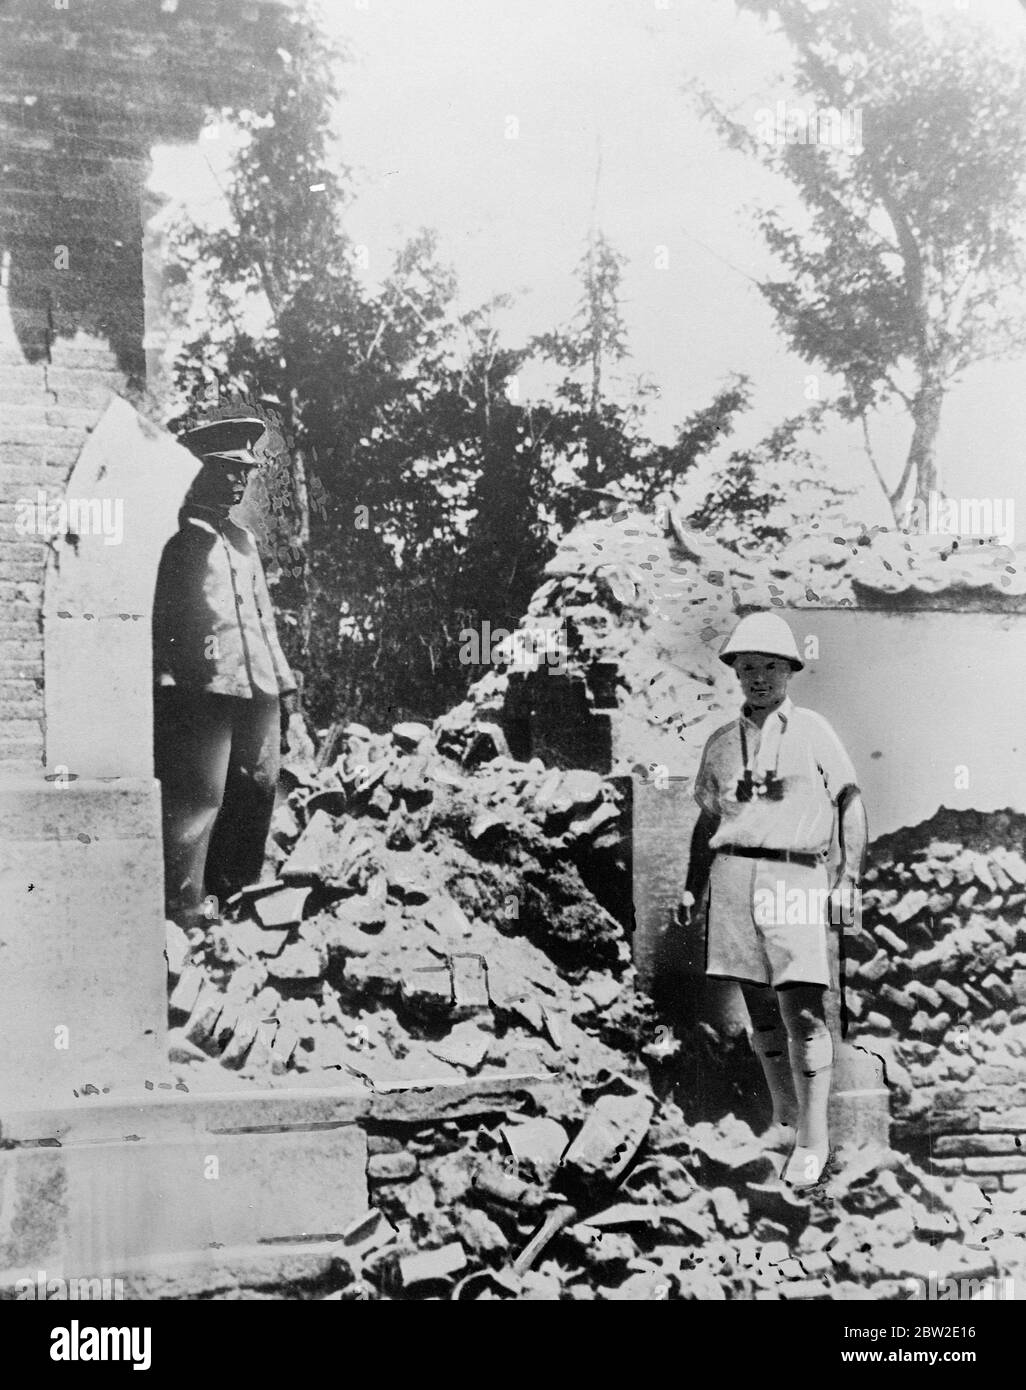 Rovinato quartier generale della 29° Armata Cinese a Pechino dopo essere stato demolito da un pesante incendio di artiglieria giapponese. Tientsin e Pechino furono sottoposti ad intensi bombardamenti aerei e di artiglieria e truppe cinesi si scontrarono con le forze giapponesi in difesa delle città. 12 agosto 1937. Foto Stock